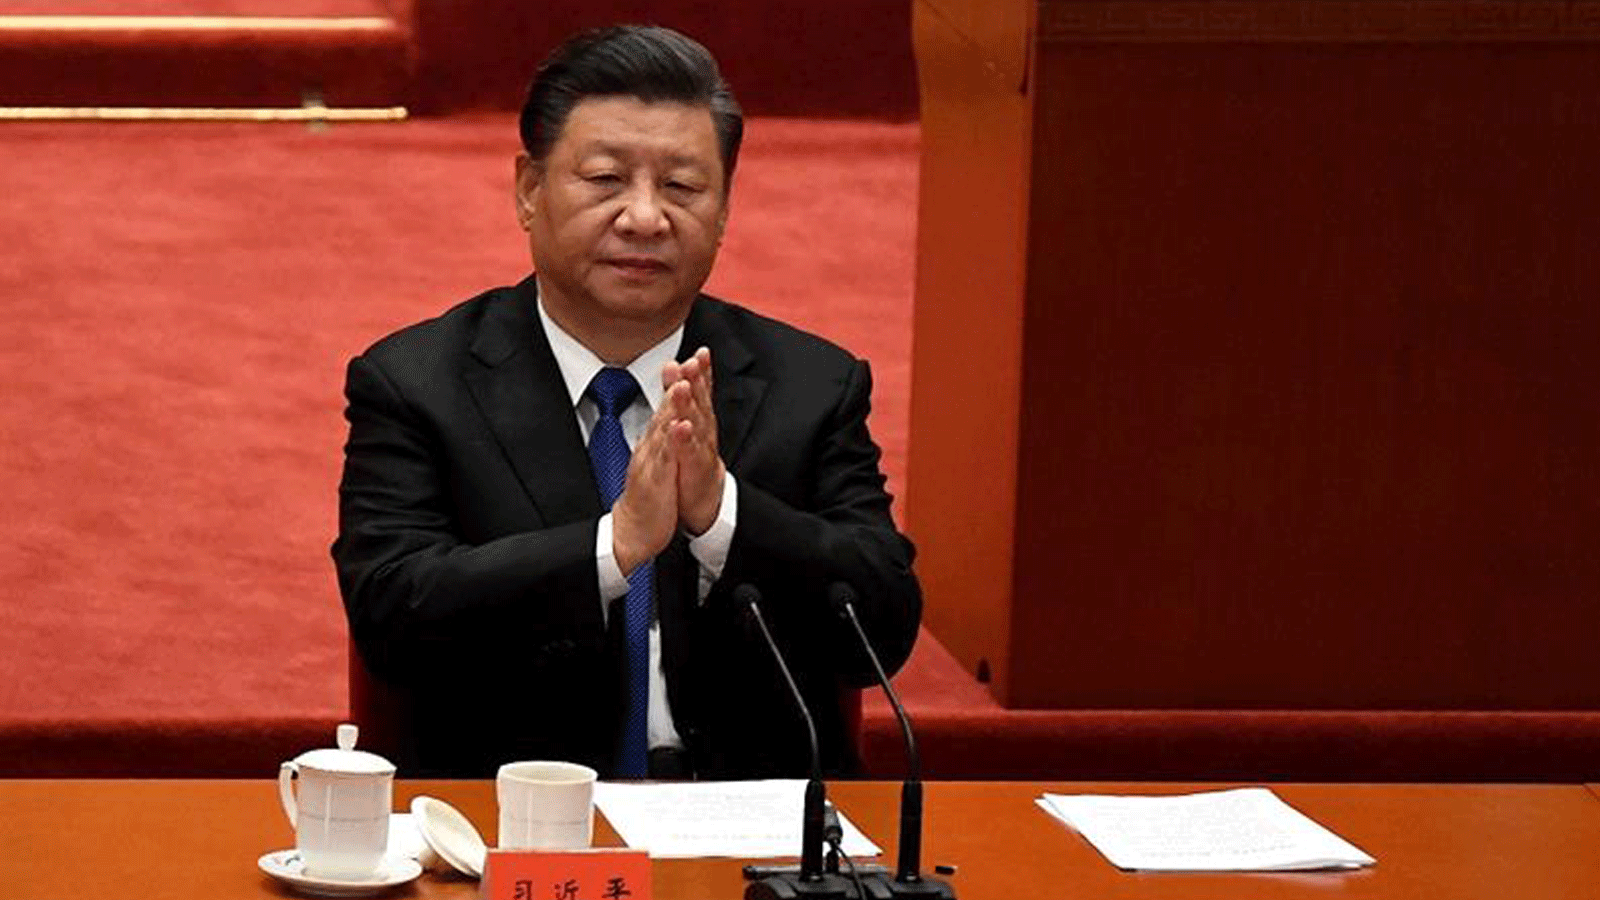 الرئيس الصيني شي جين بينغ يتحدث خلال الاحتفال بالذكرى 110 لثورة شينهاي التي أطاحت بأسرة تشينغ وأدت إلى تأسيس جمهورية الصين، في قاعة الشعب الكبرى في بكين في 9 تشرين الأول/أكتوبر 2021